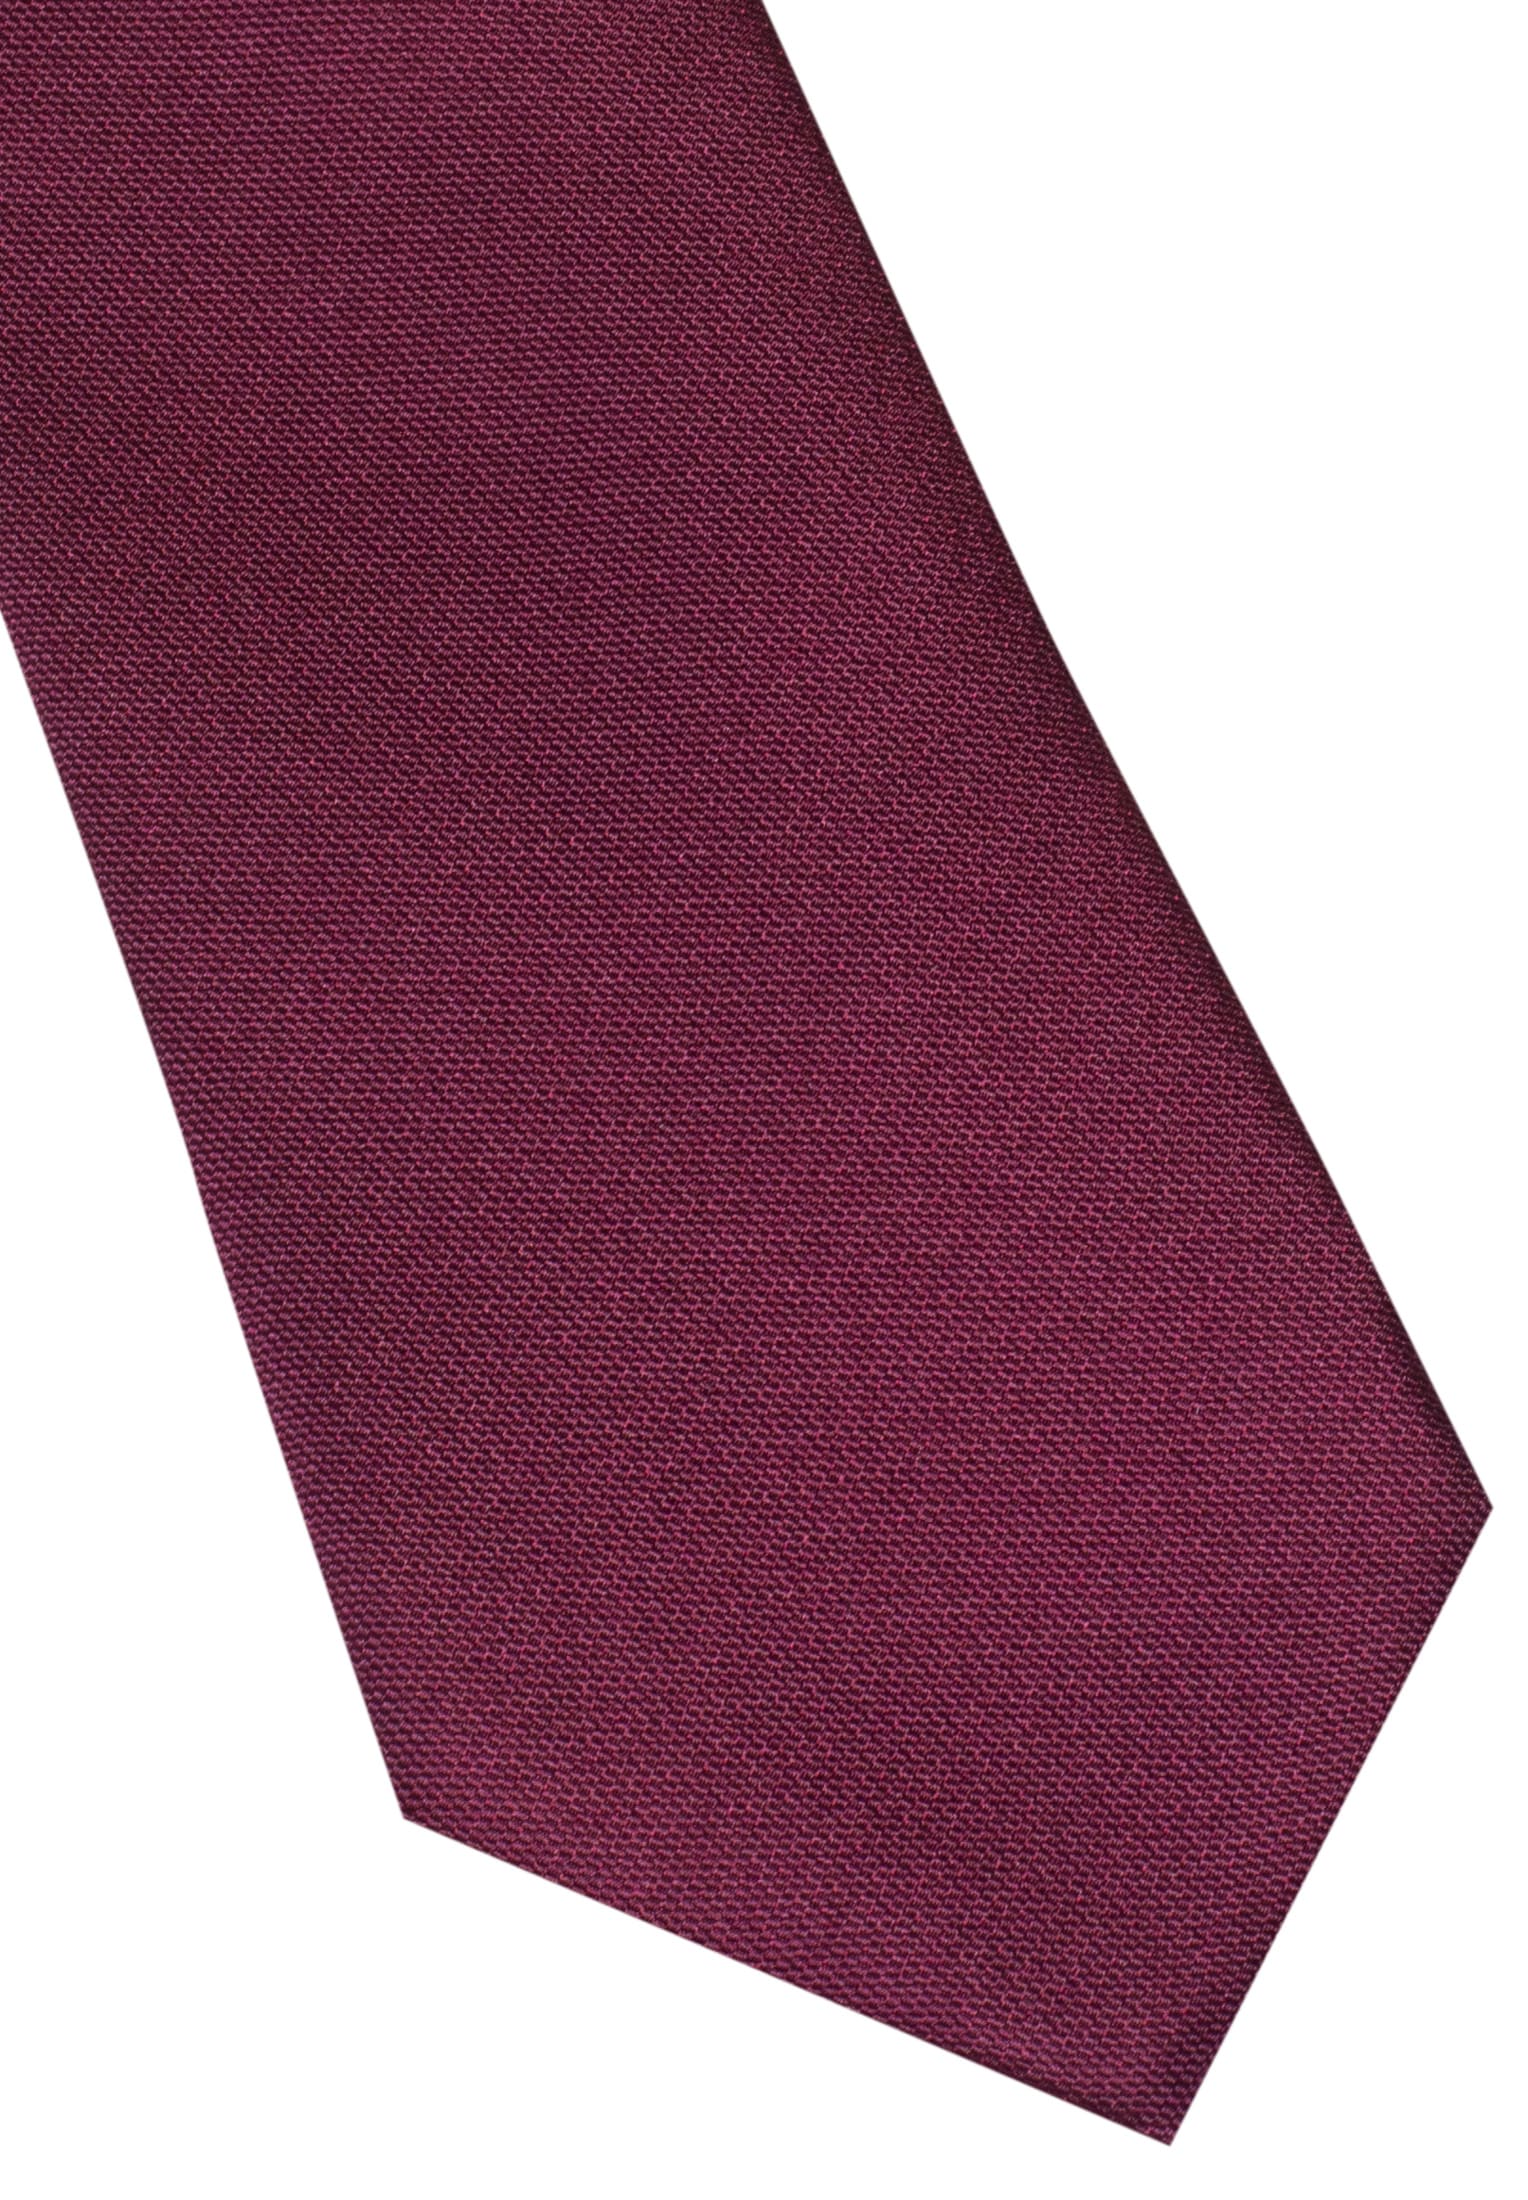 Krawatte in navy unifarben | navy 142 | | 1AC00020-01-91-142